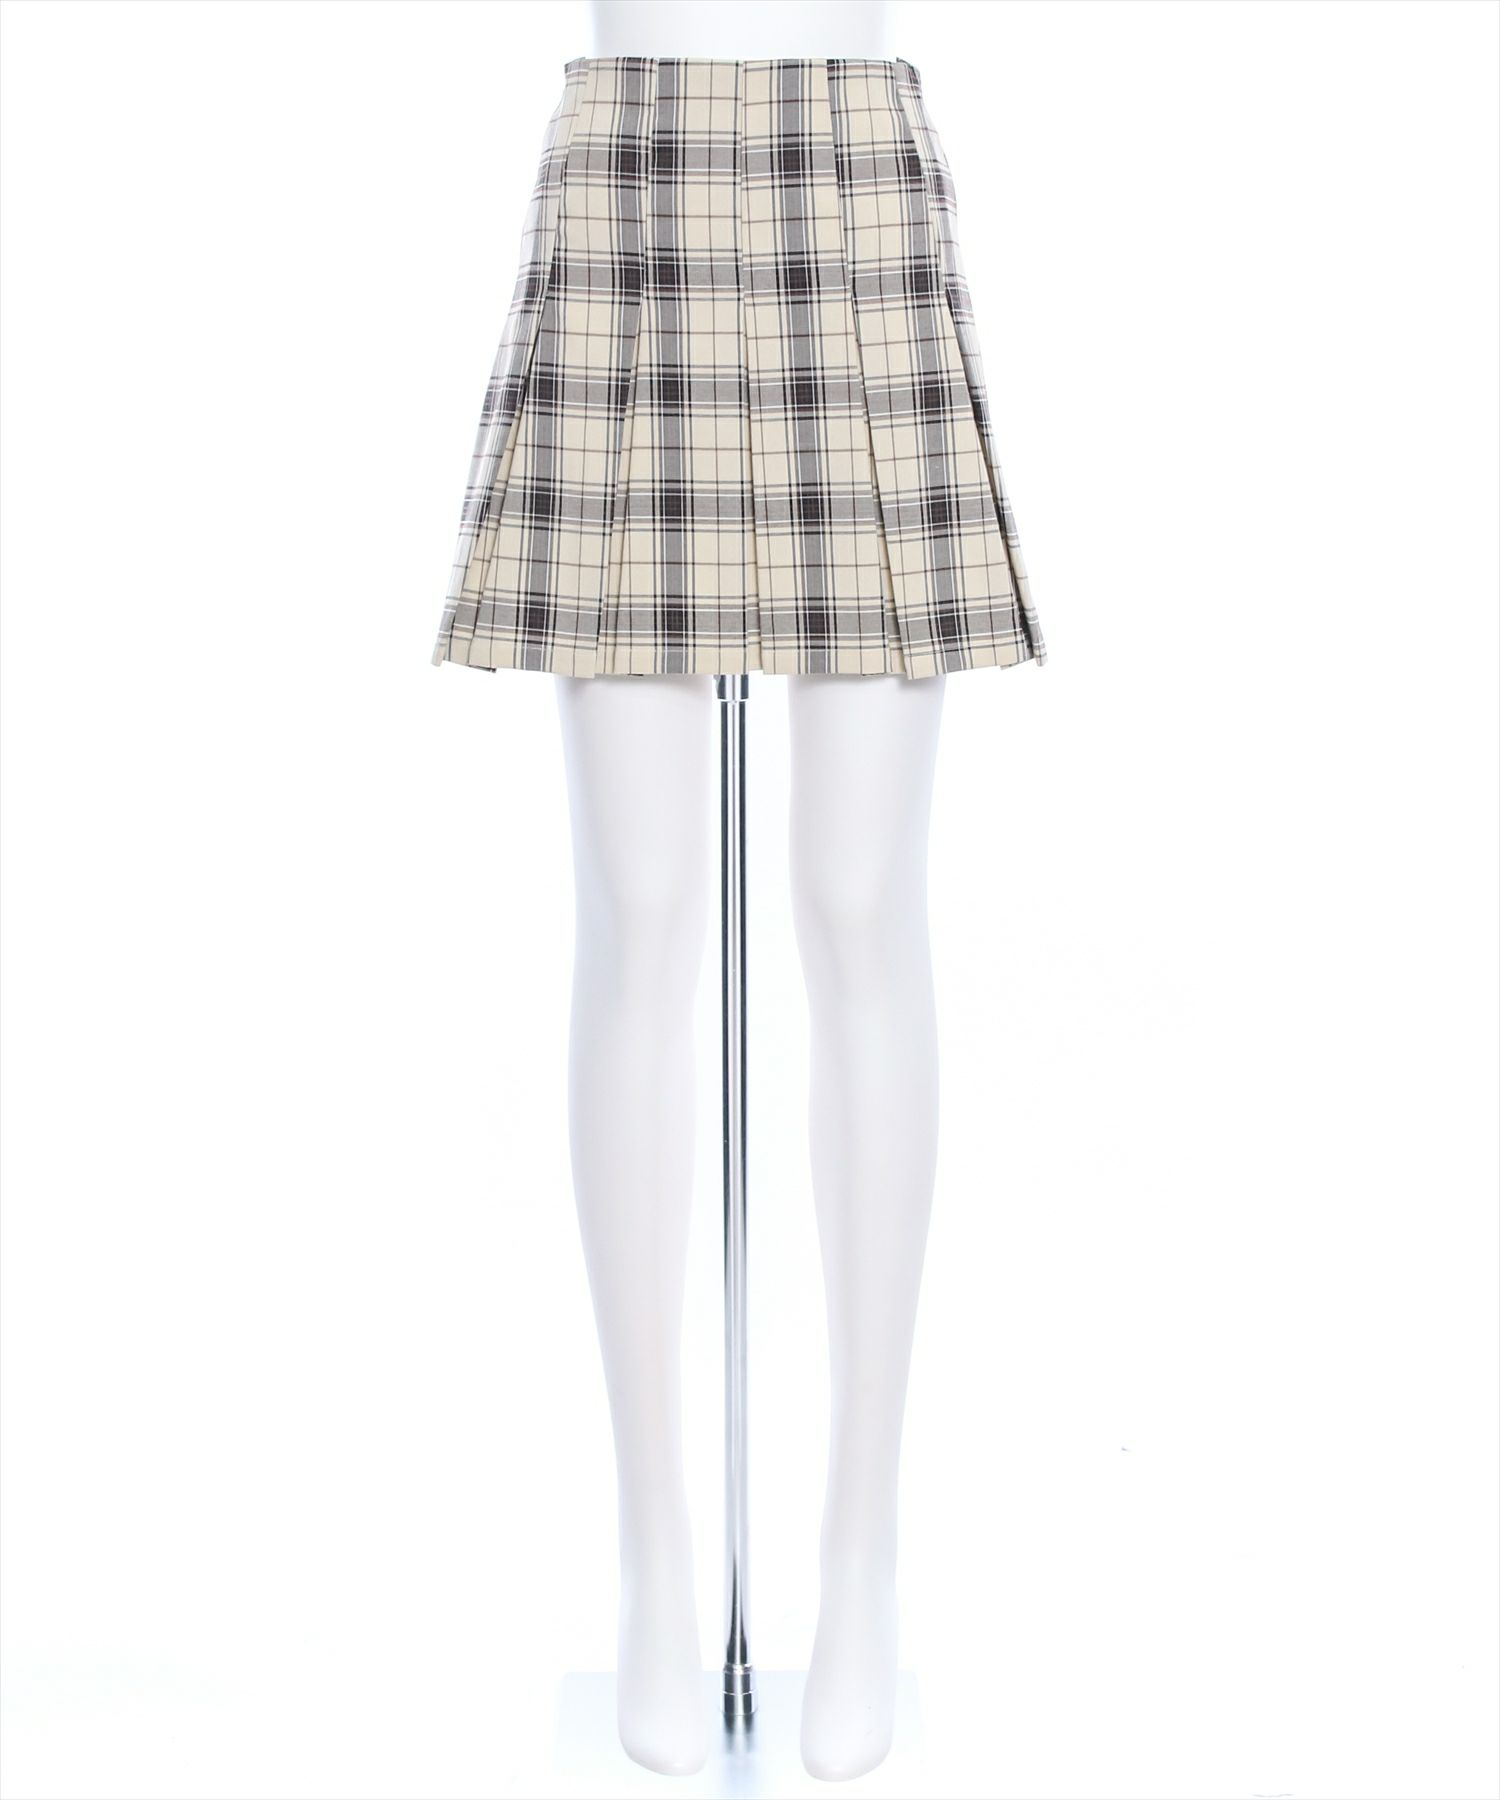 ≪春新作≫チェック柄ボックスプリーツスカート[CL8271] | レディース 